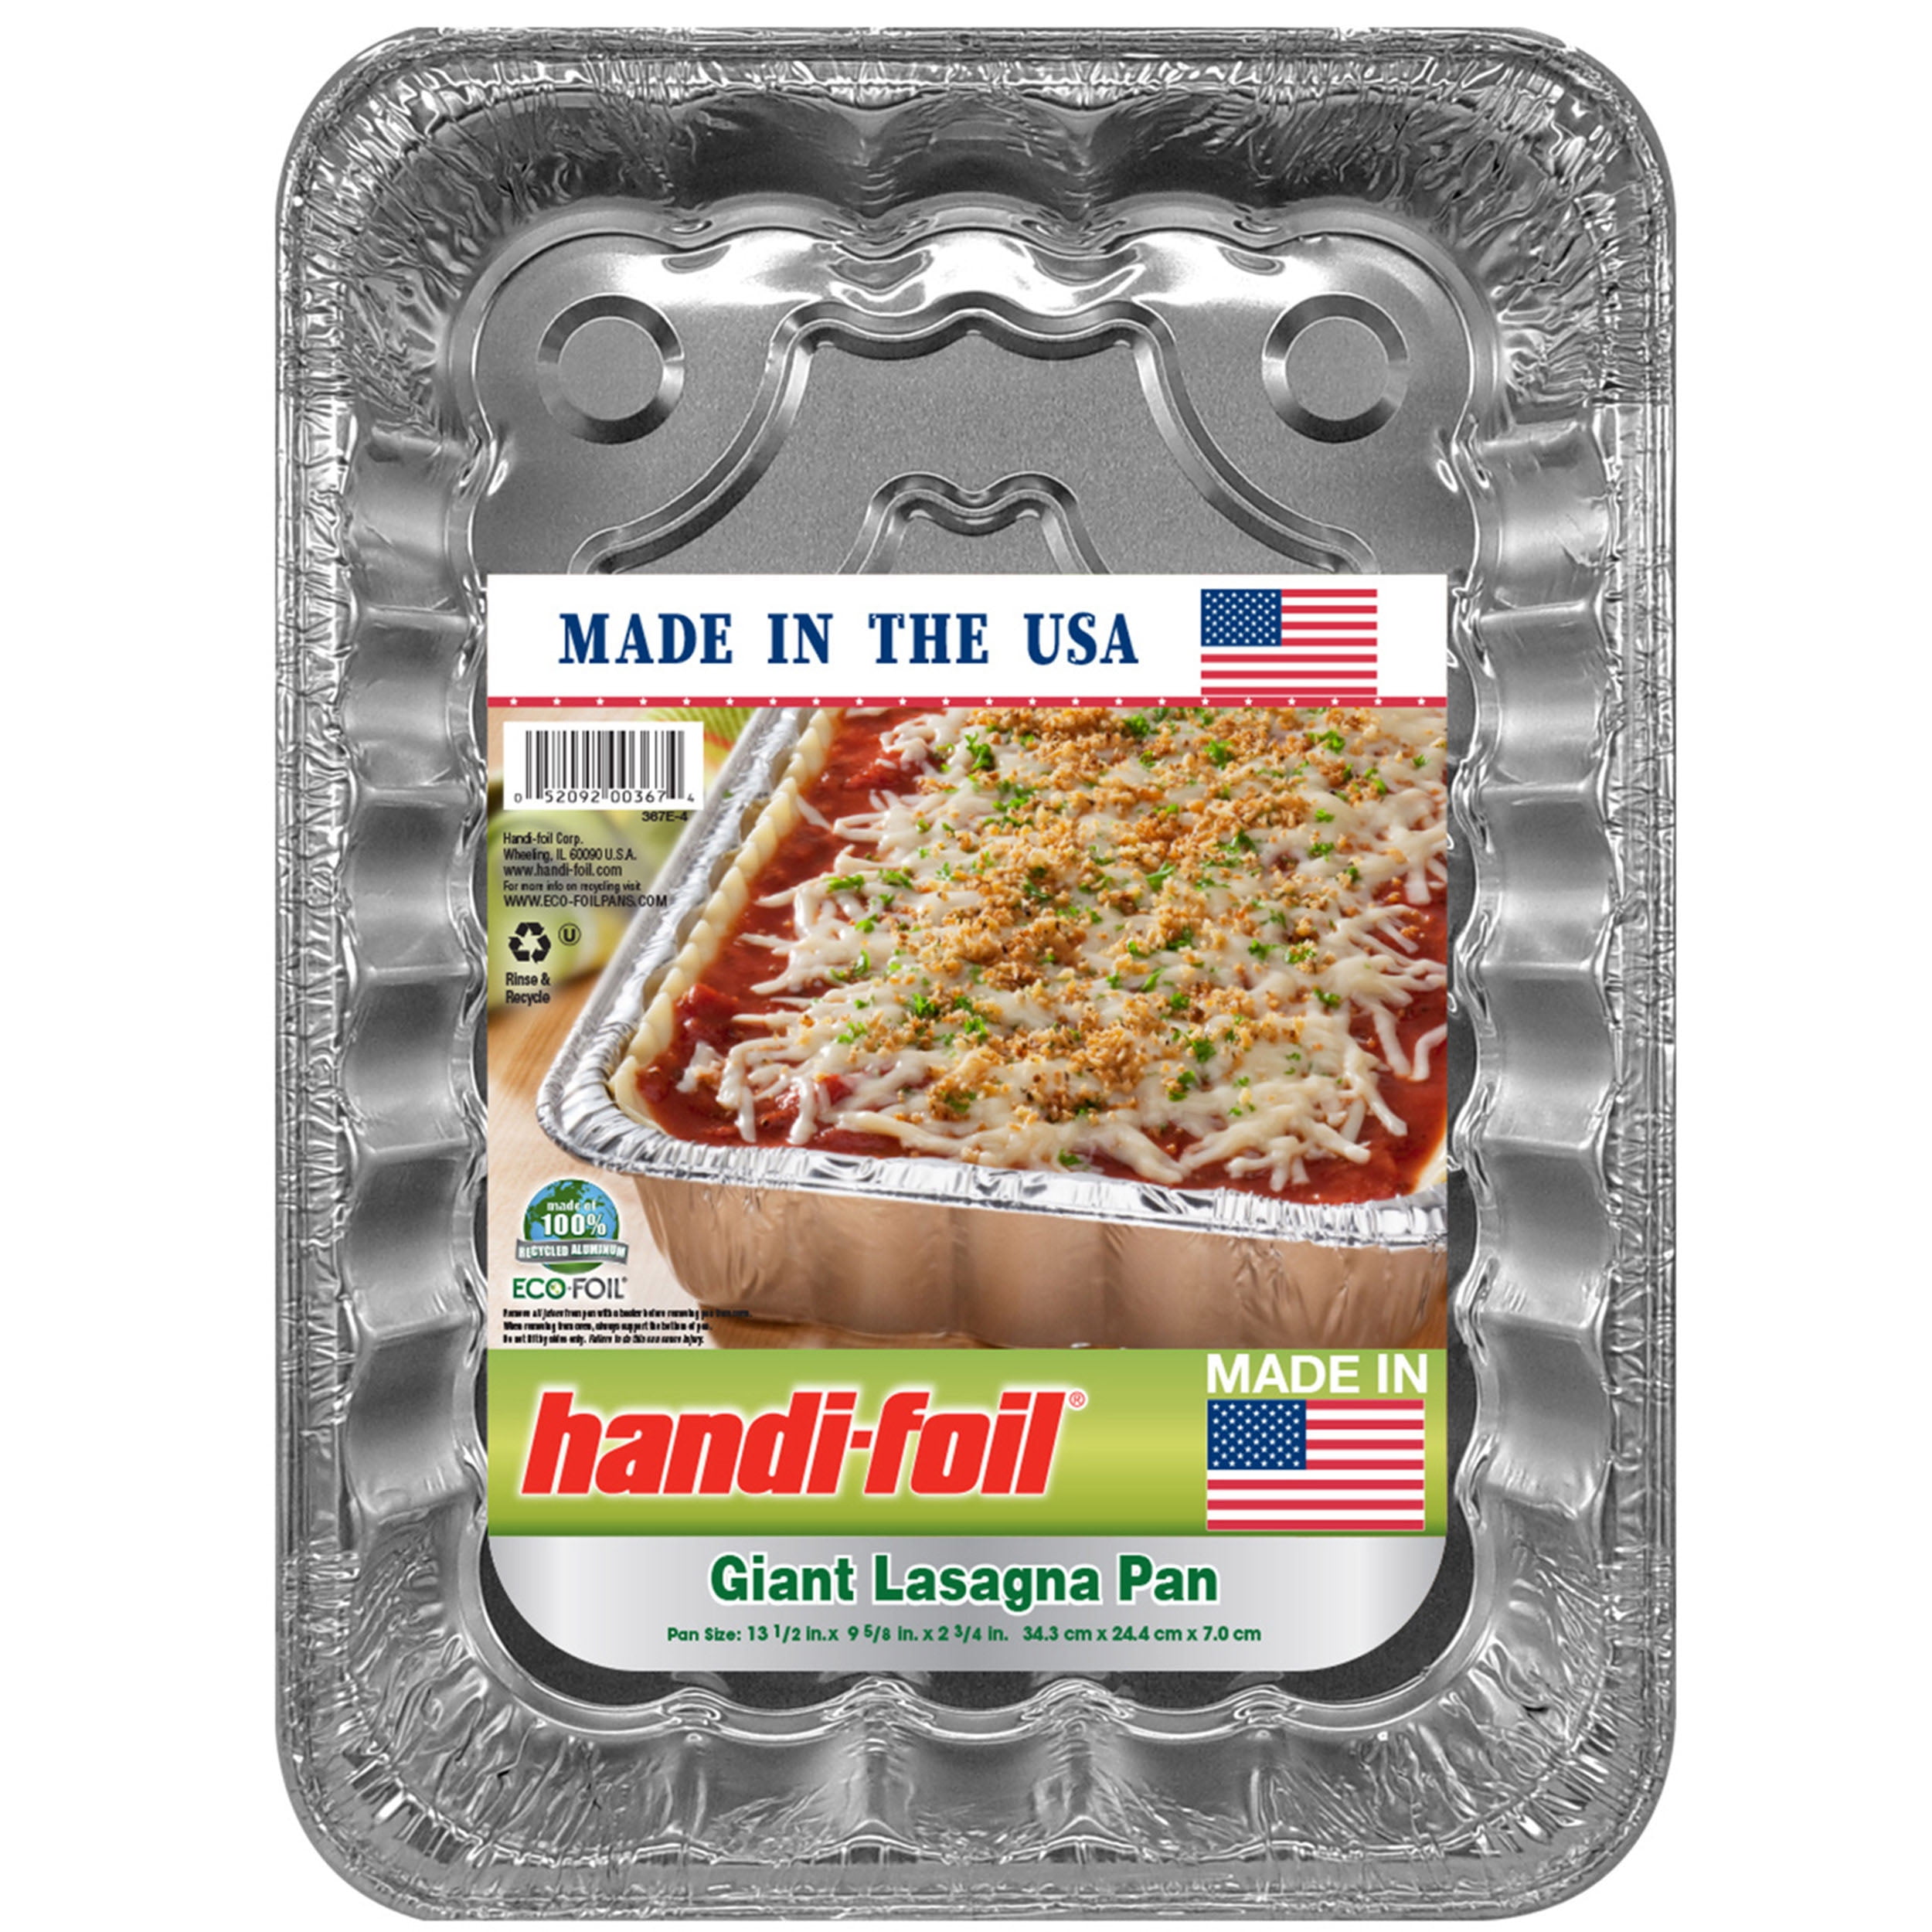 Aluminum Giant Lasagna Pan